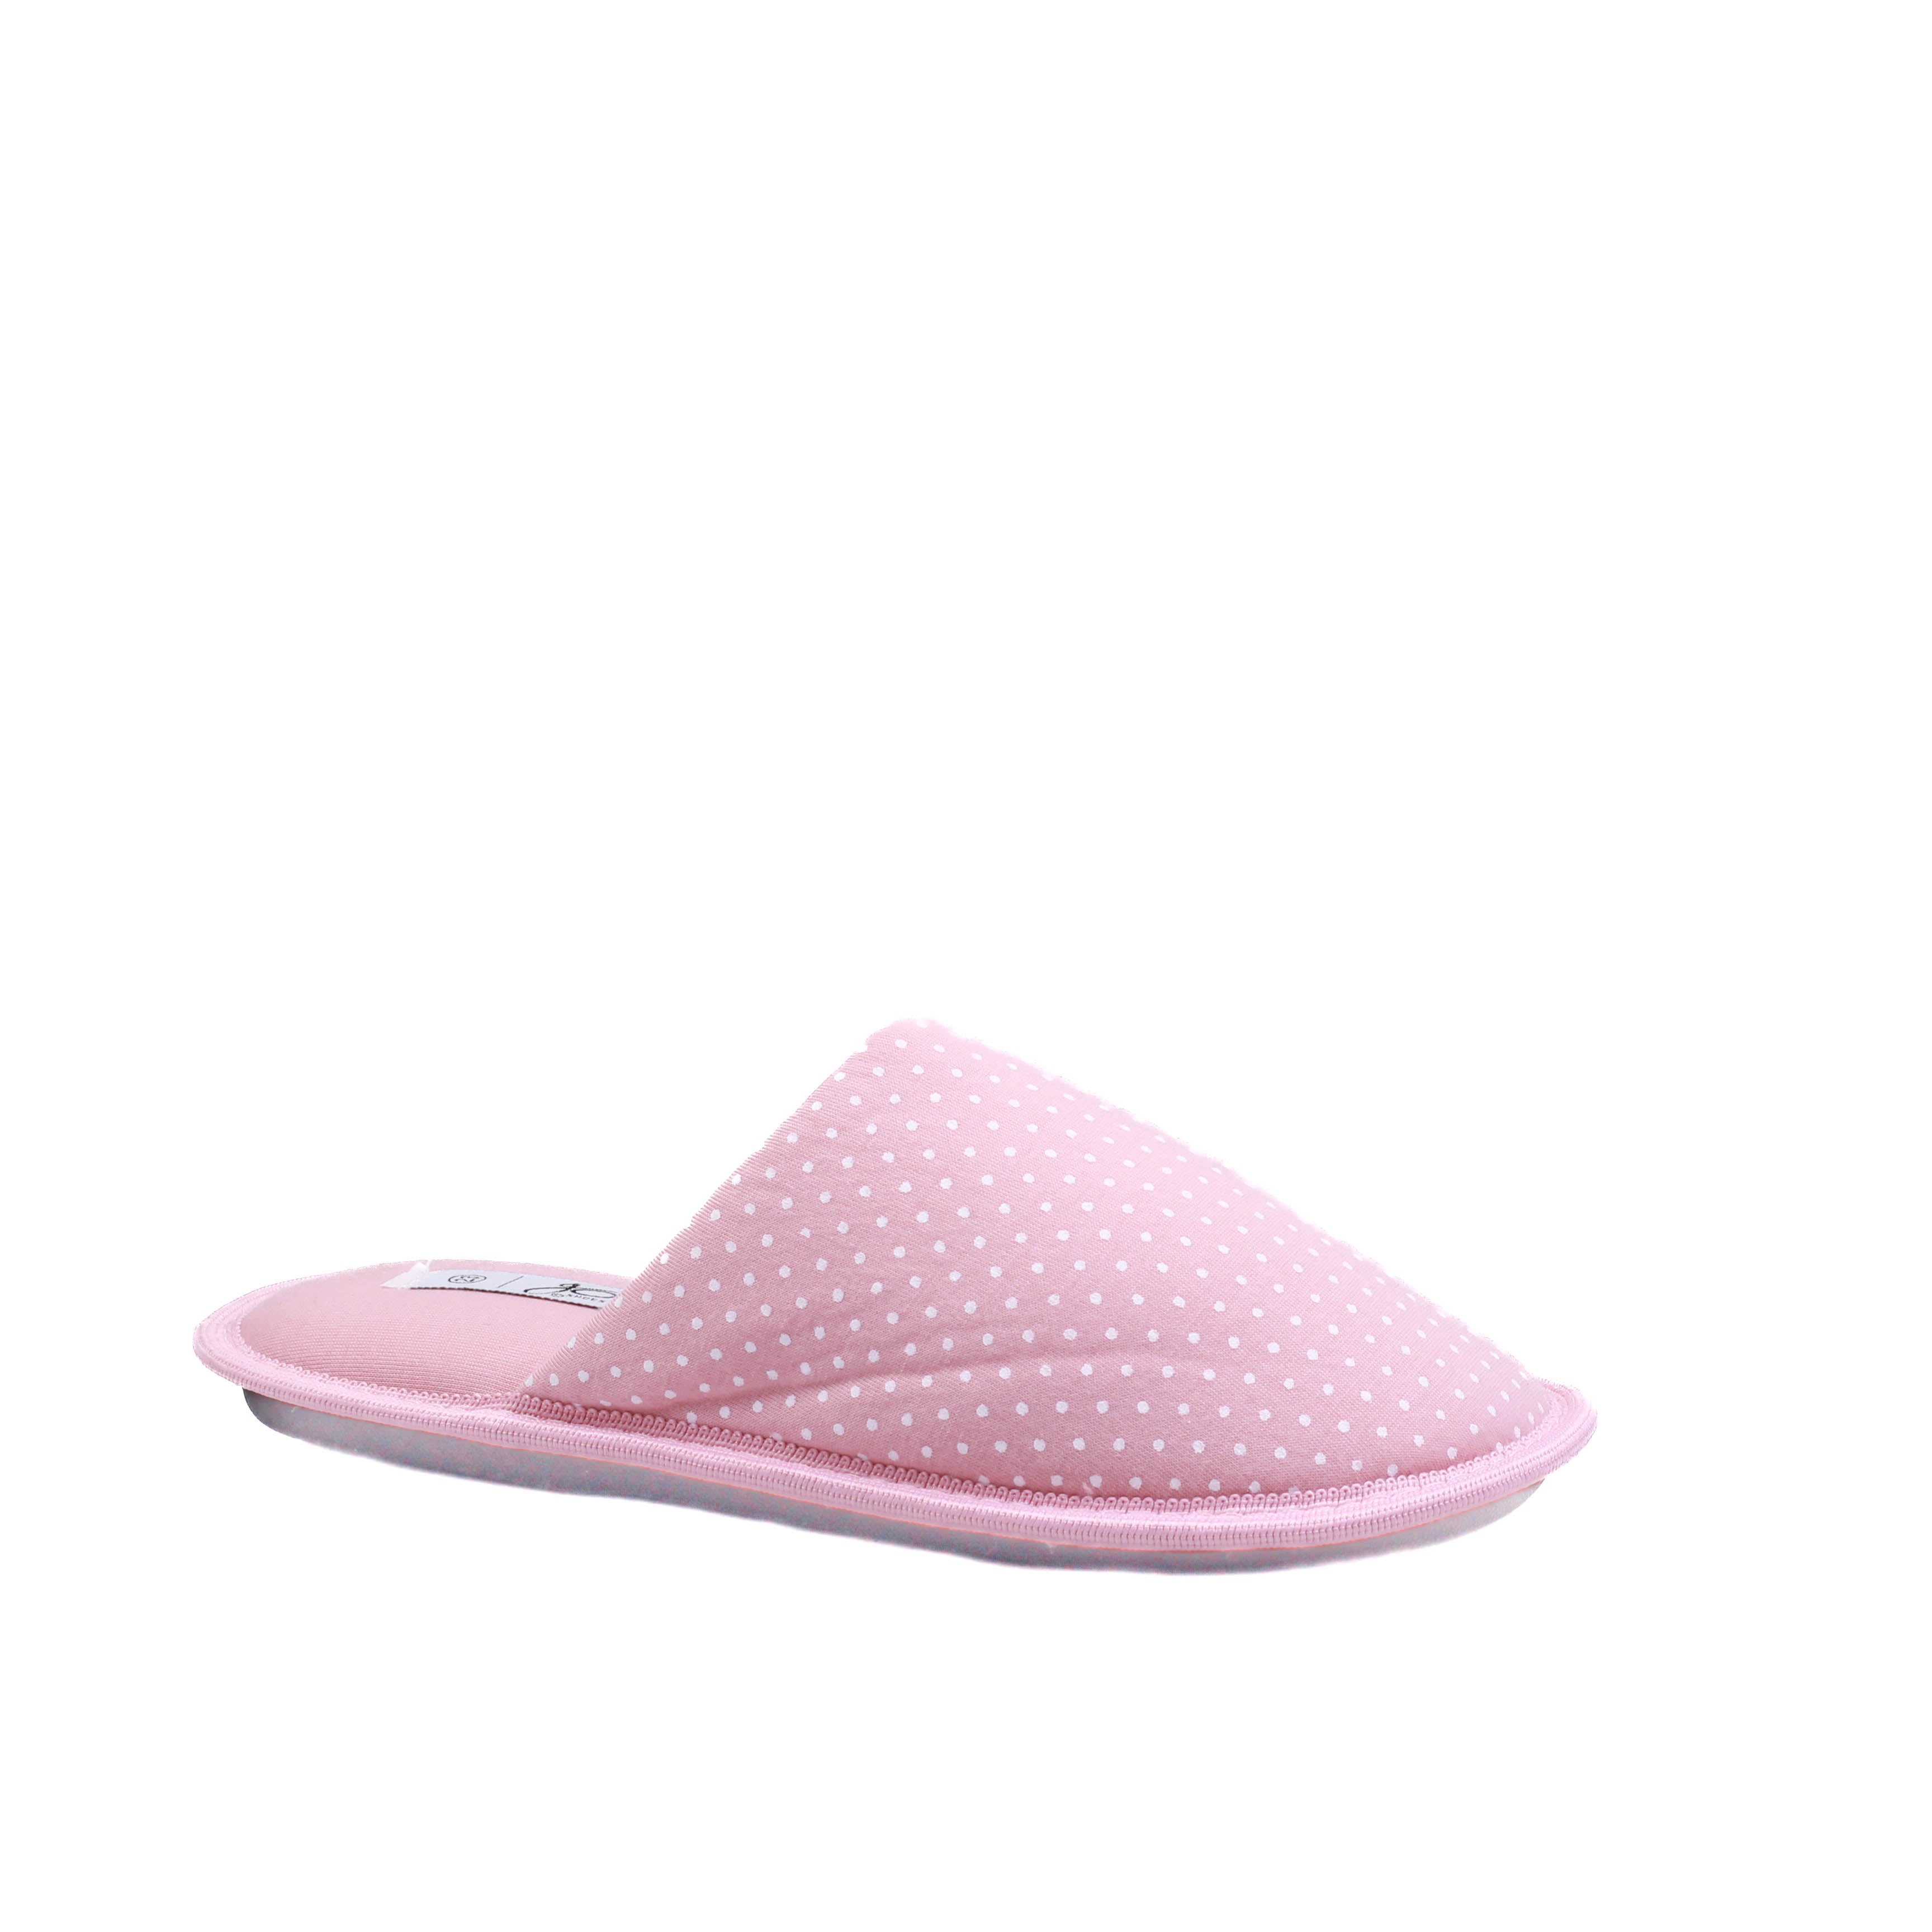 Pantufla para dama color rosa con puntos blancos de metedera